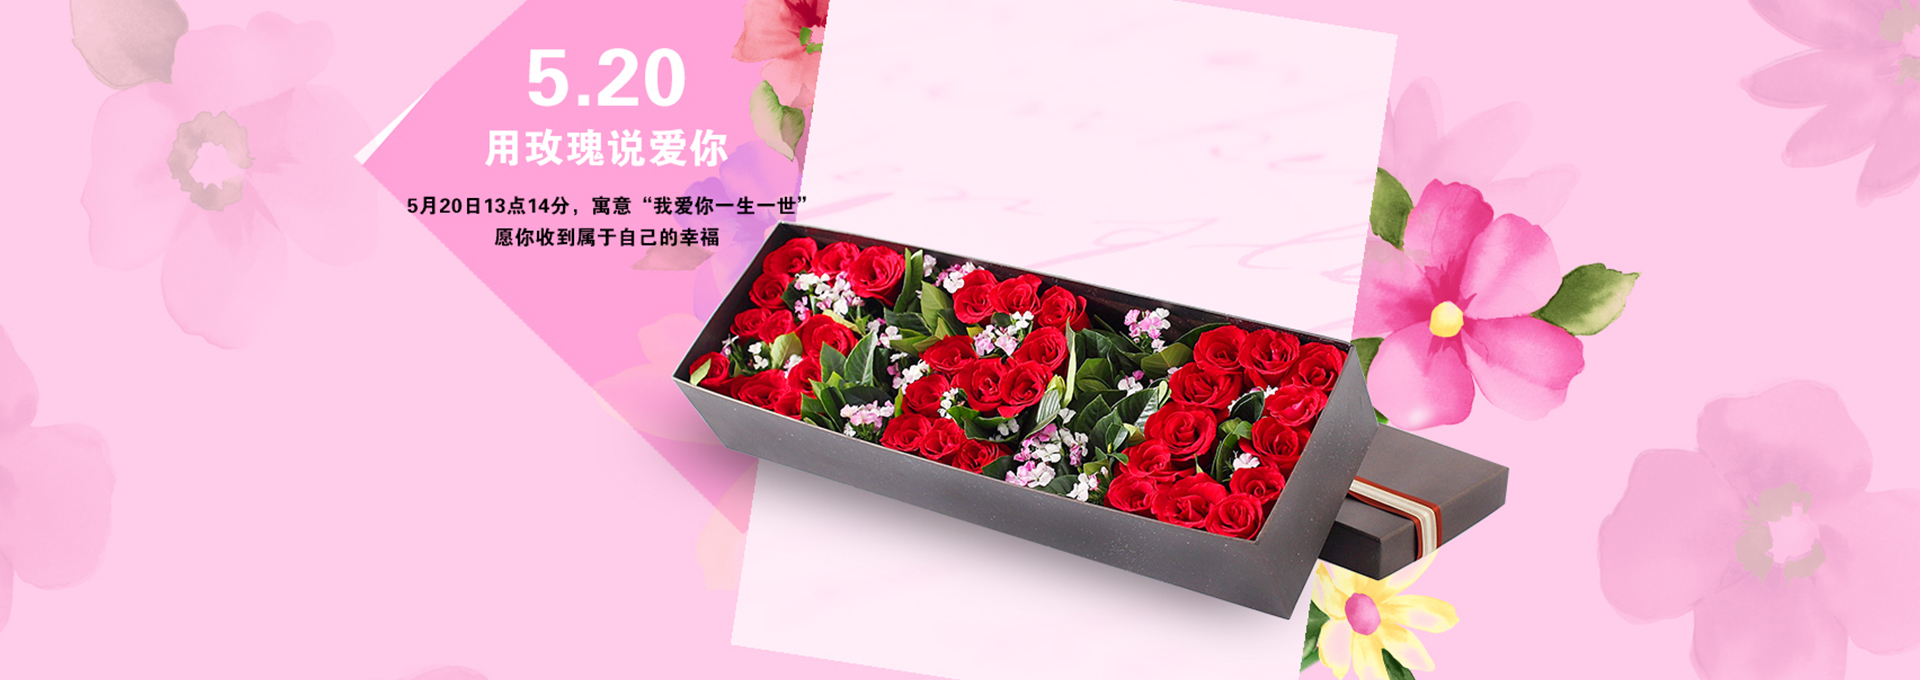 520鲜花购 - 京东礼品箱包|礼品|鲜花绿植专题活